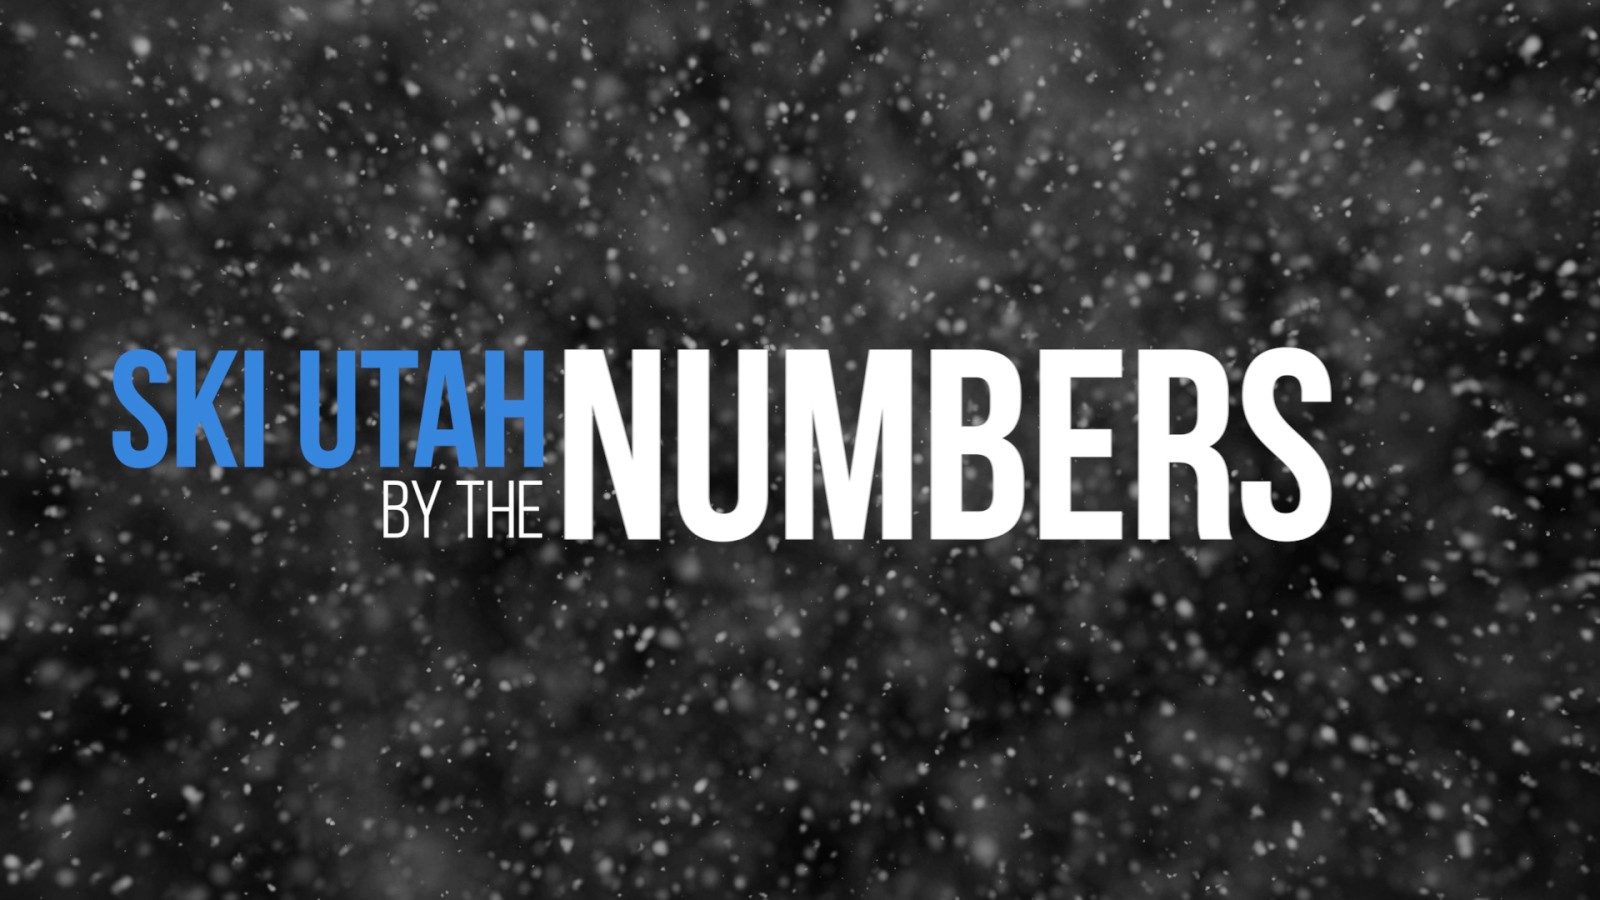 Ski Utah By The Numbers